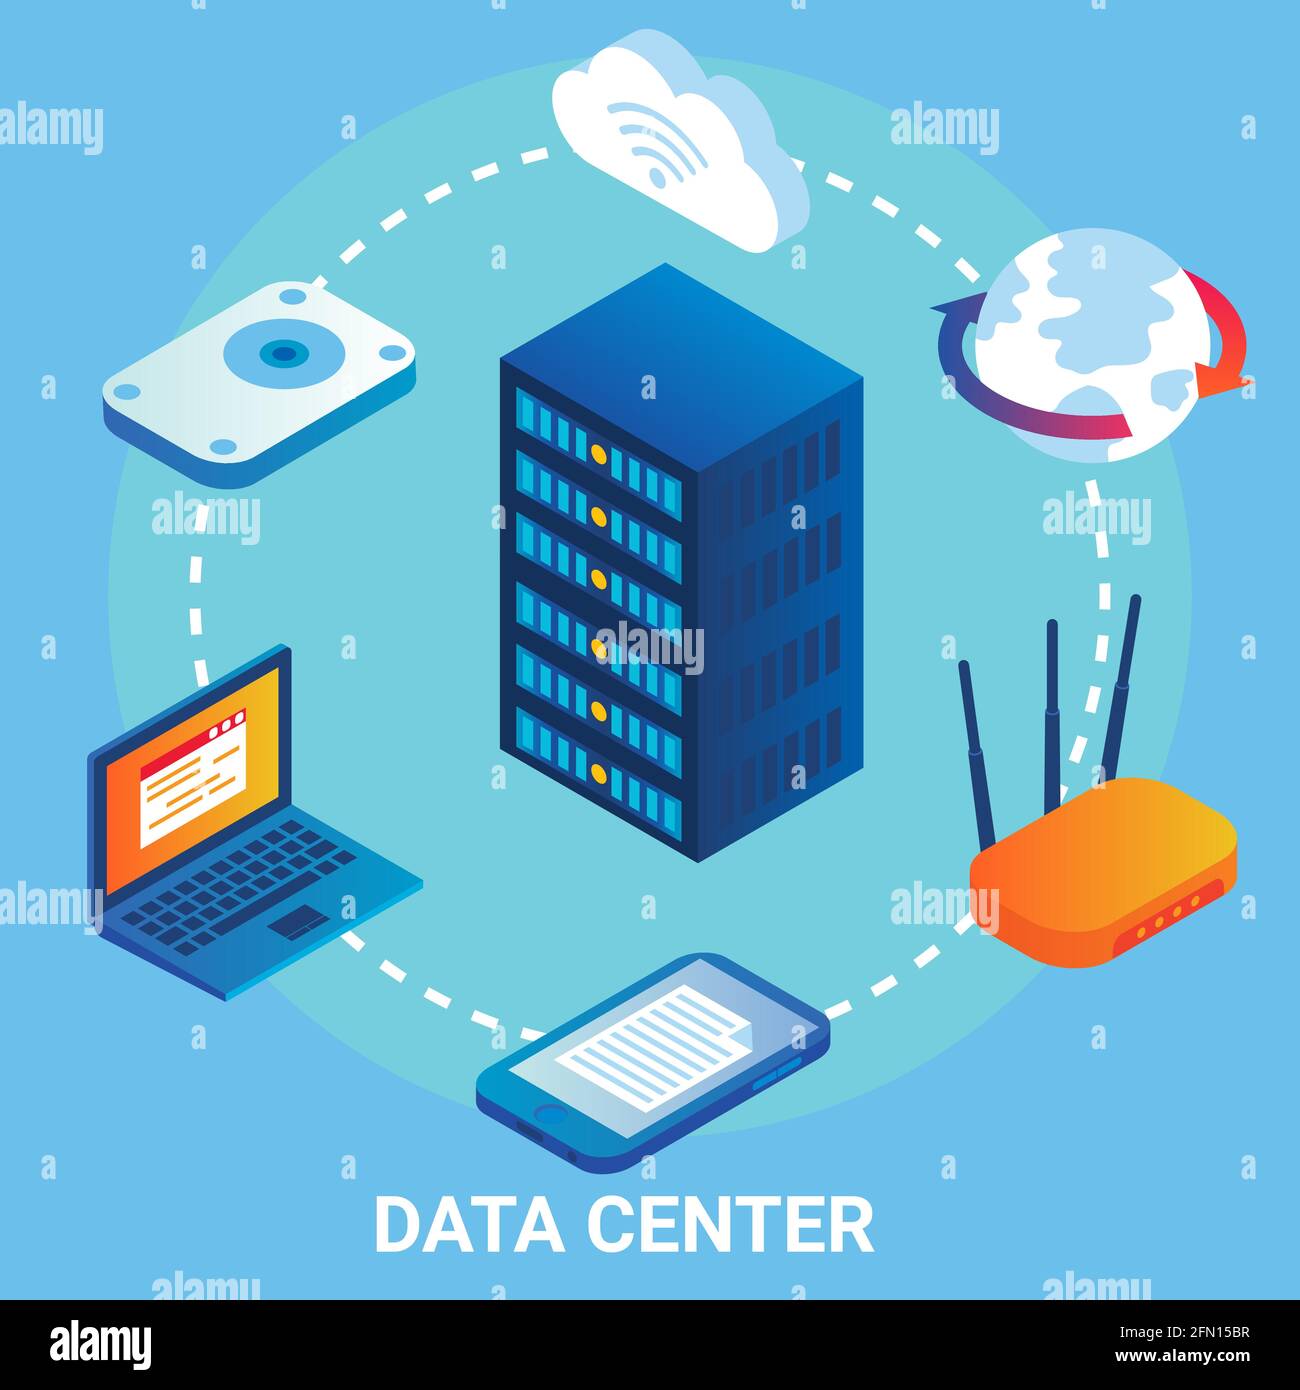 Data center flowchart, vector illustration. Isometric laptop, mobile, server racks, wifi. Cloud storage, data transfer. Stock Vector